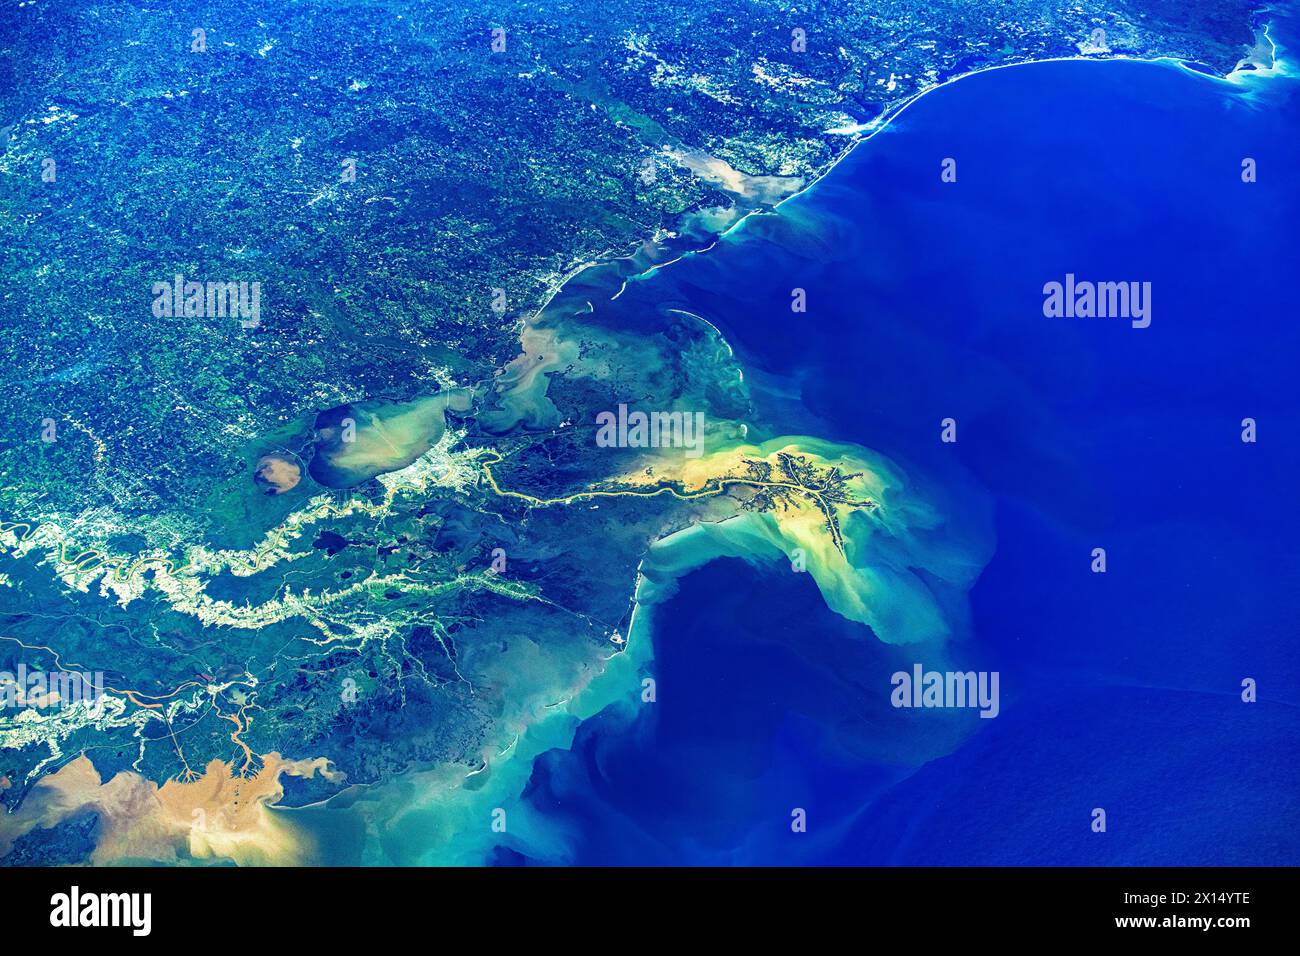 Le littoral de la Louisiane, États-Unis. Amélioration numérique d'une image par la NASA Banque D'Images